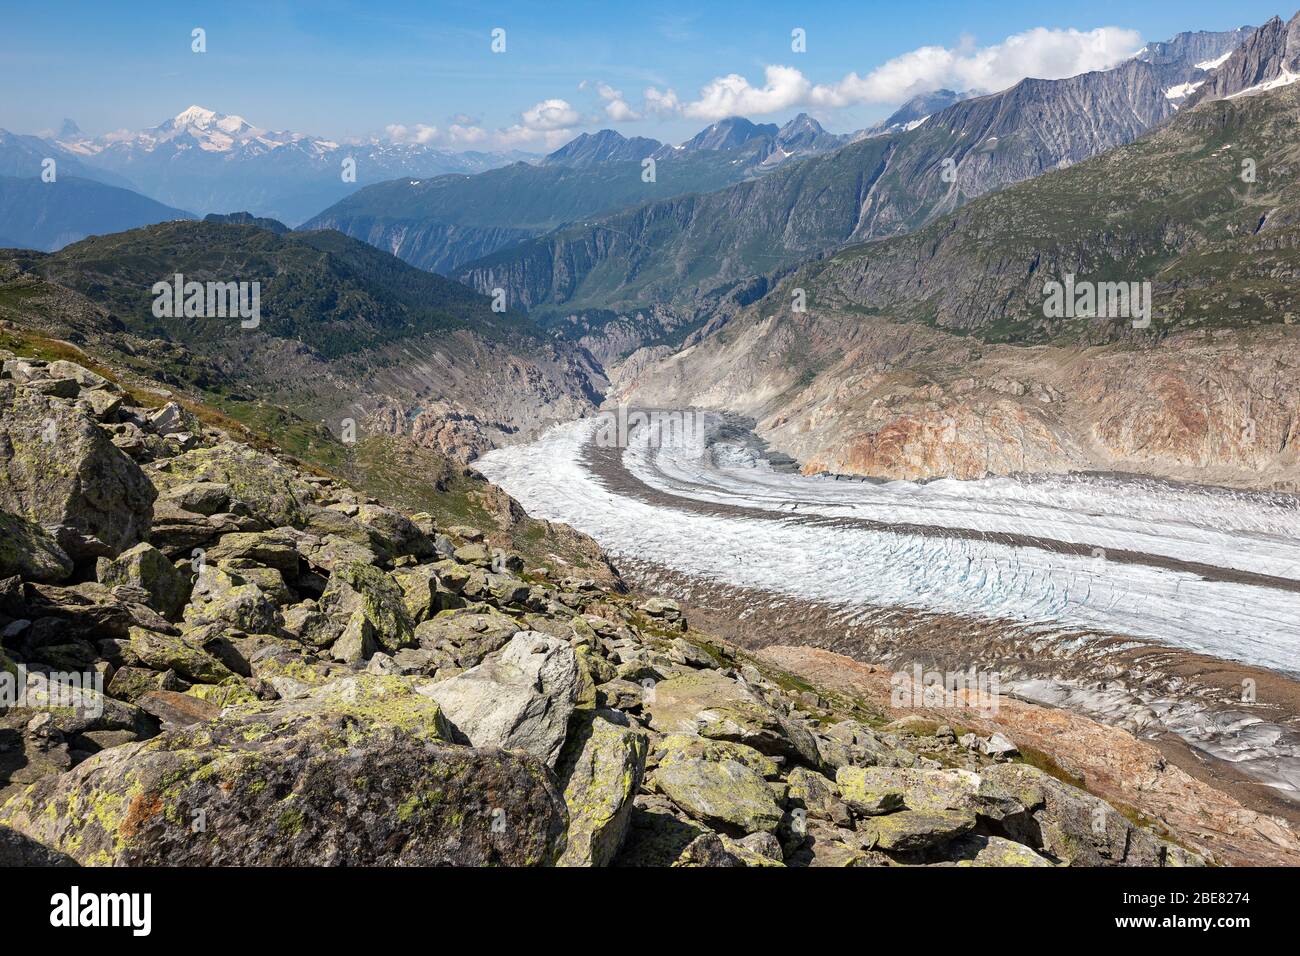 Il ghiacciaio Aletsch. Aletschgletscher. Terminal del ghiacciaio. Alpi Bernesi orientali nel cantone svizzero del Vallese. Svizzera. Foto Stock